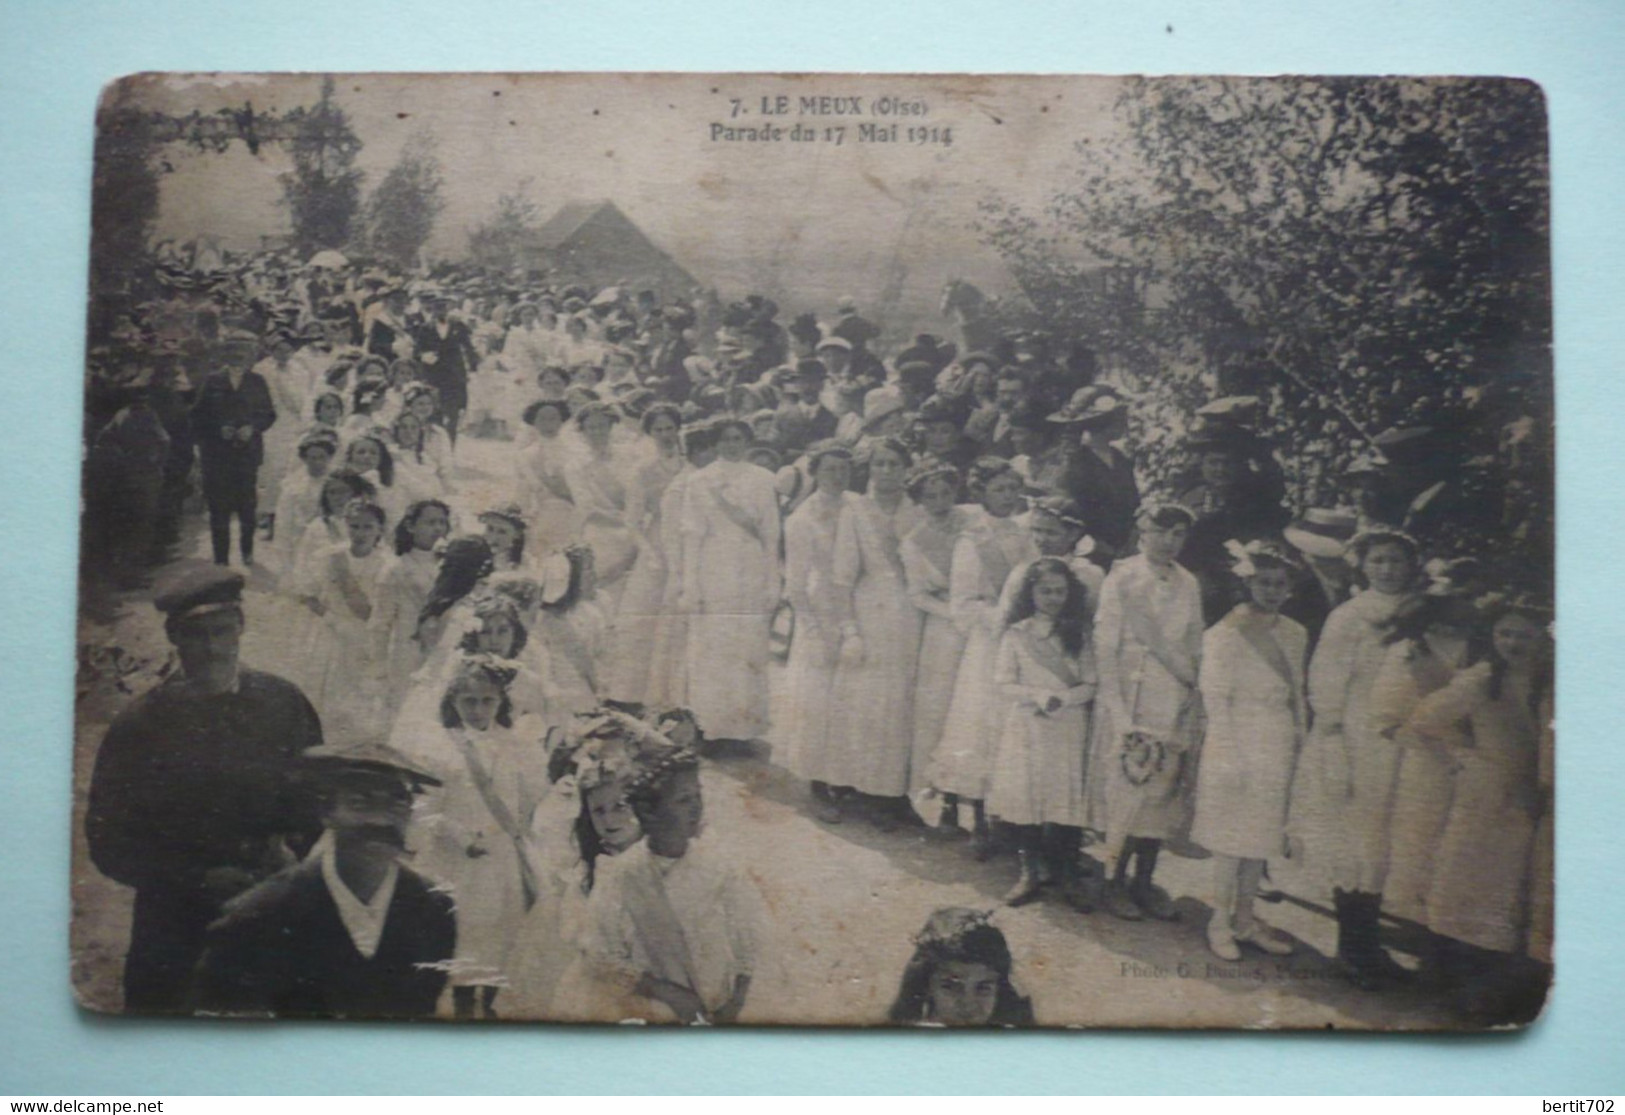 60 - LE MEUX - PARADE DU 17 MAI 1914 - Bouquet Provincial - Tir à L'arc  - Groupe De Jeunes Filles Tout De Blanc Vêtues - Archery